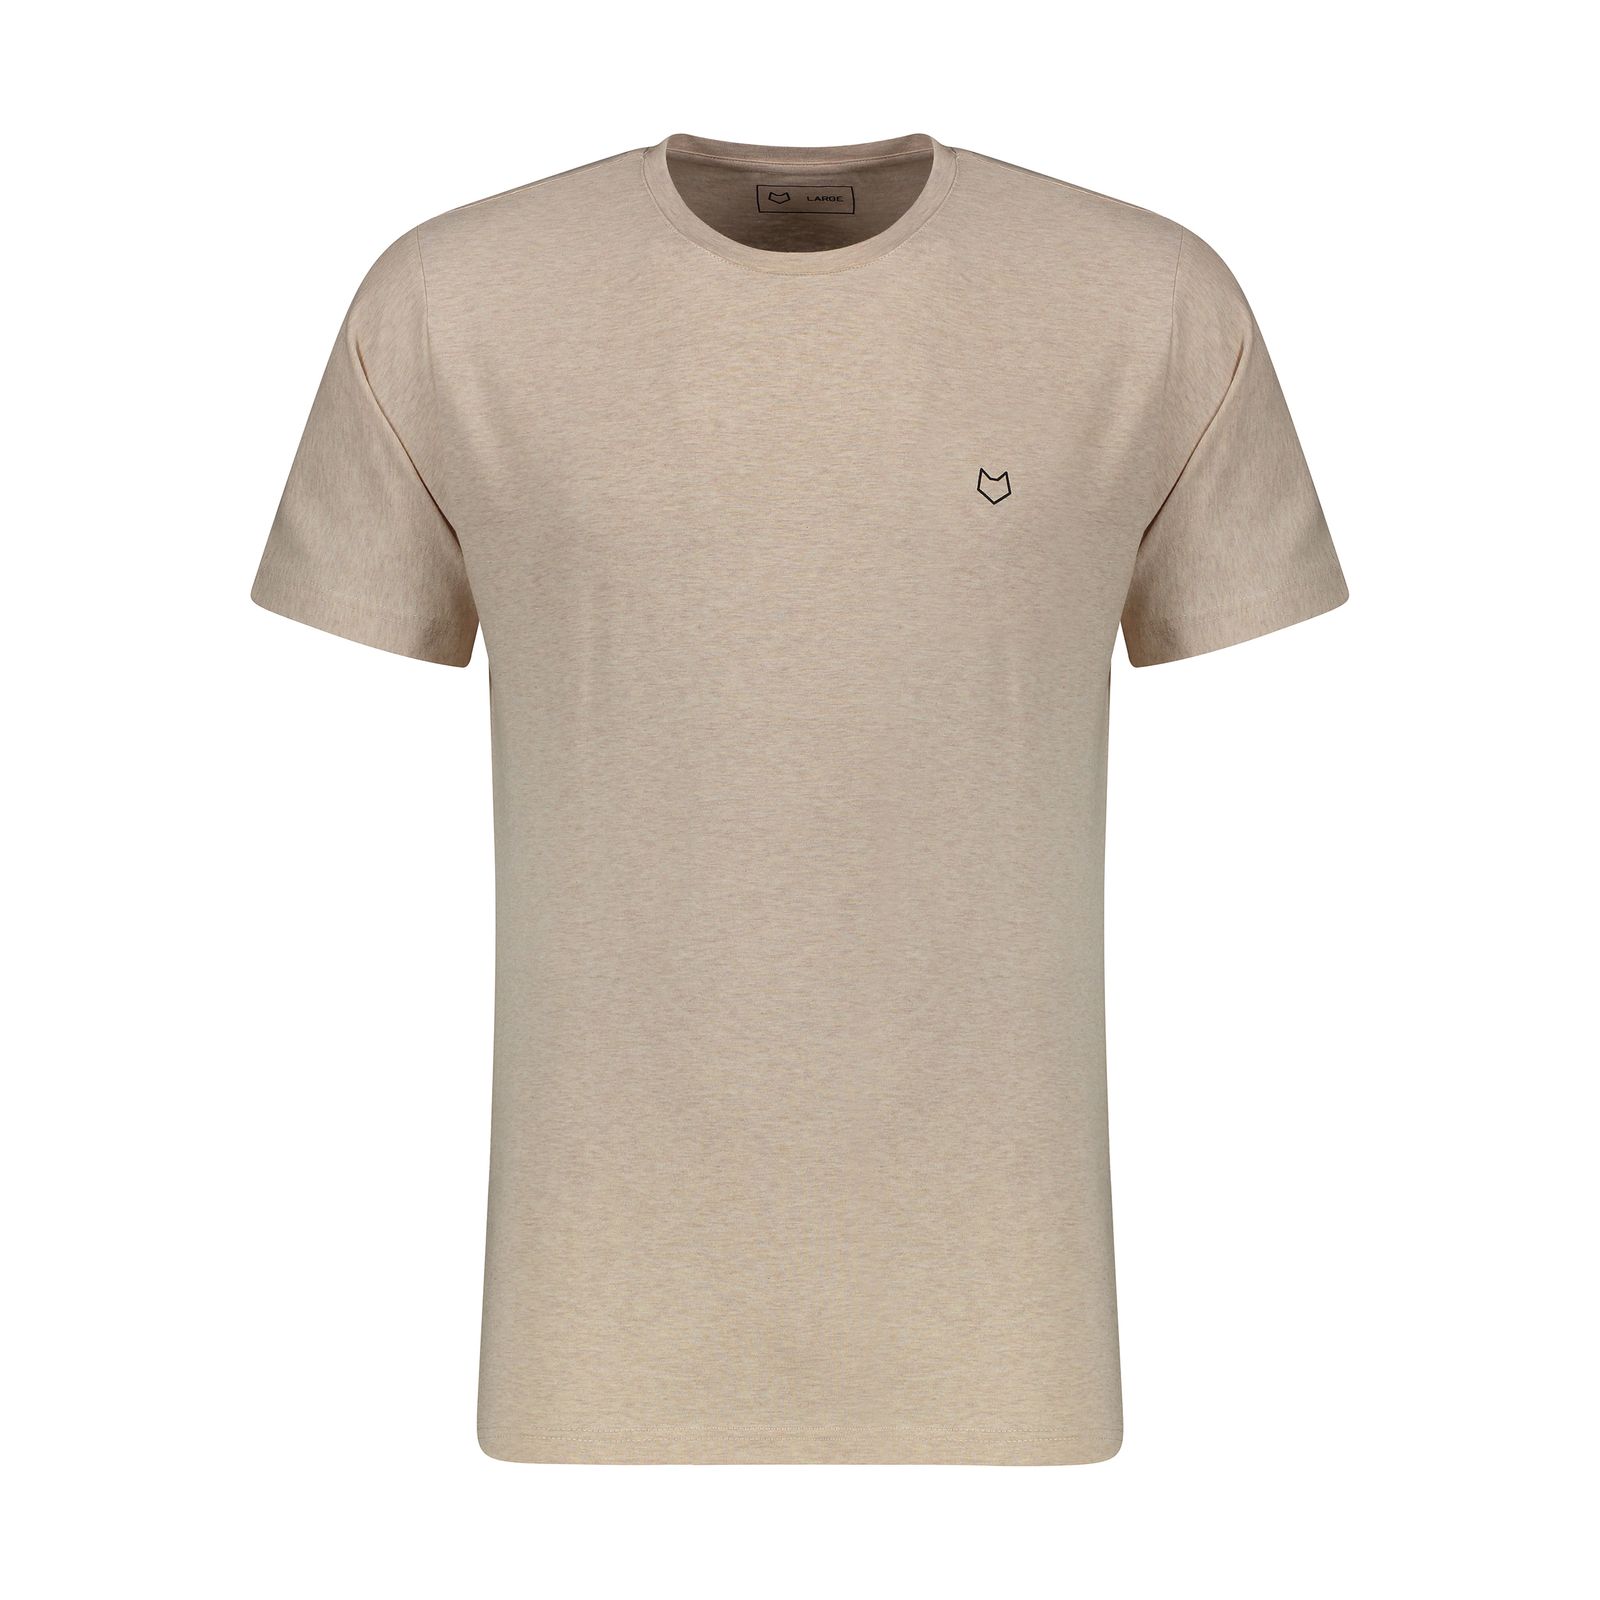 تی شرت آستین کوتاه مردانه مل اند موژ مدل  M07302-708 -  - 1